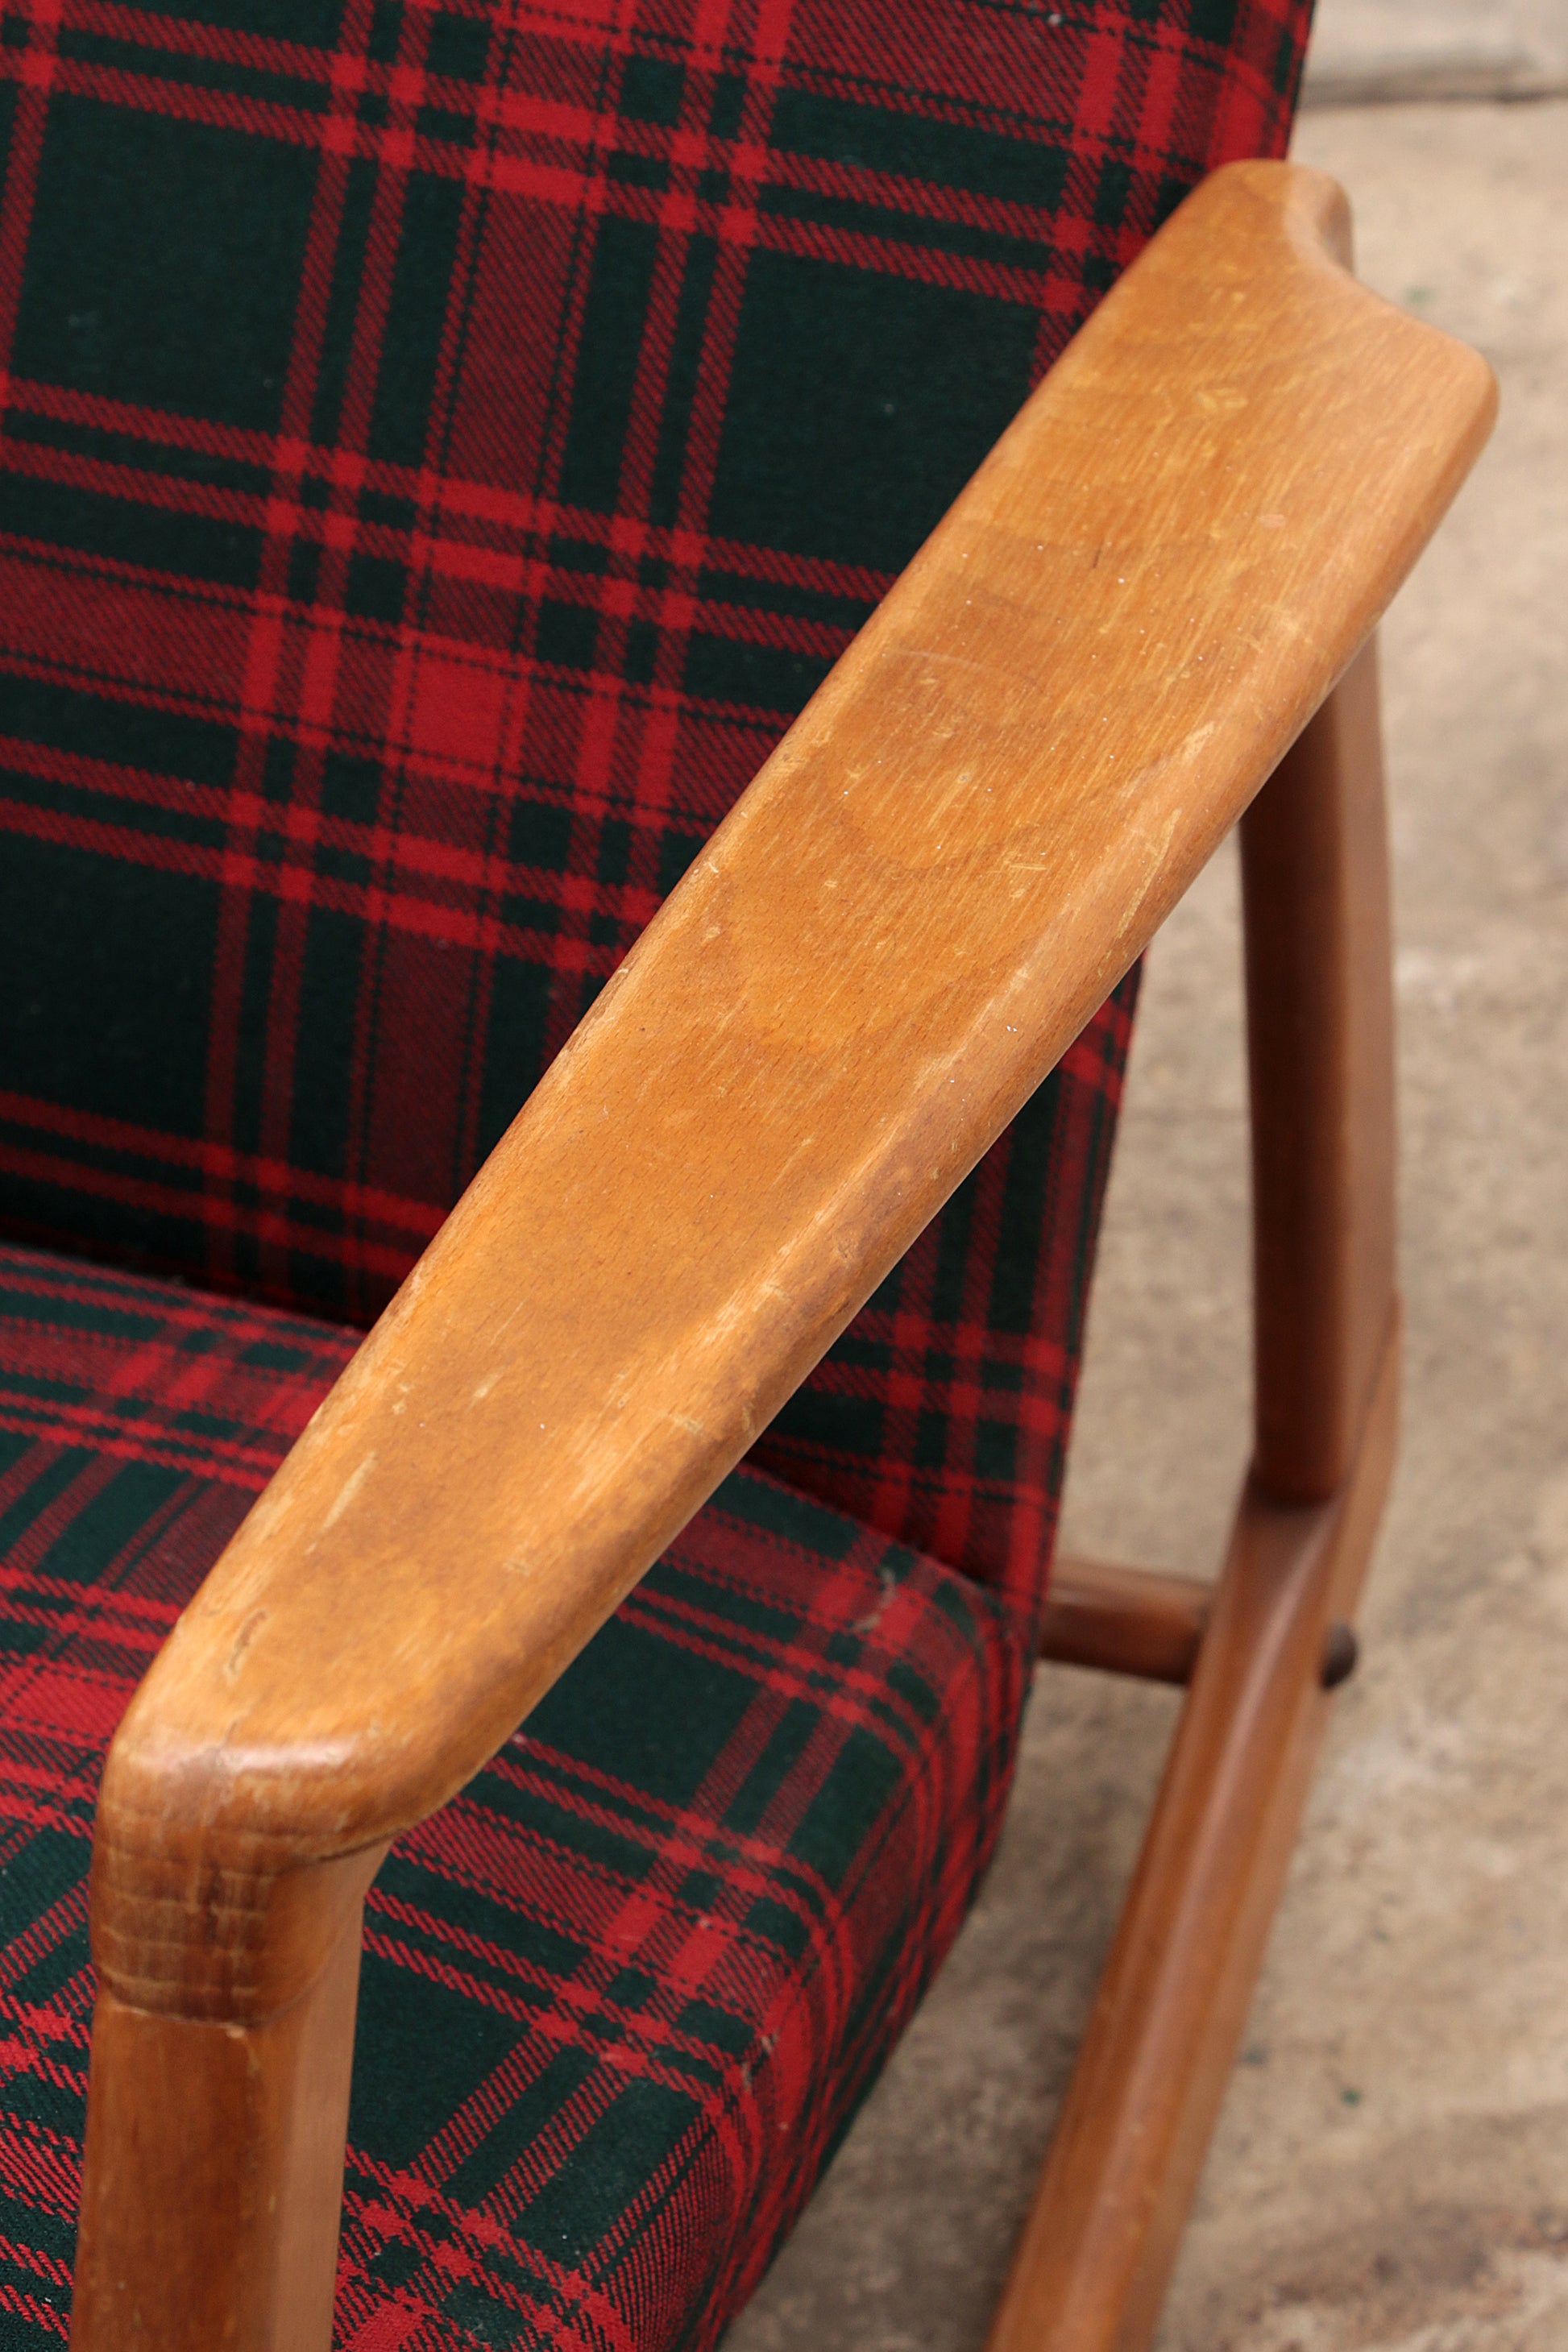 Vintage beuken houten schommelstoel gemaakt in de jaren 60.